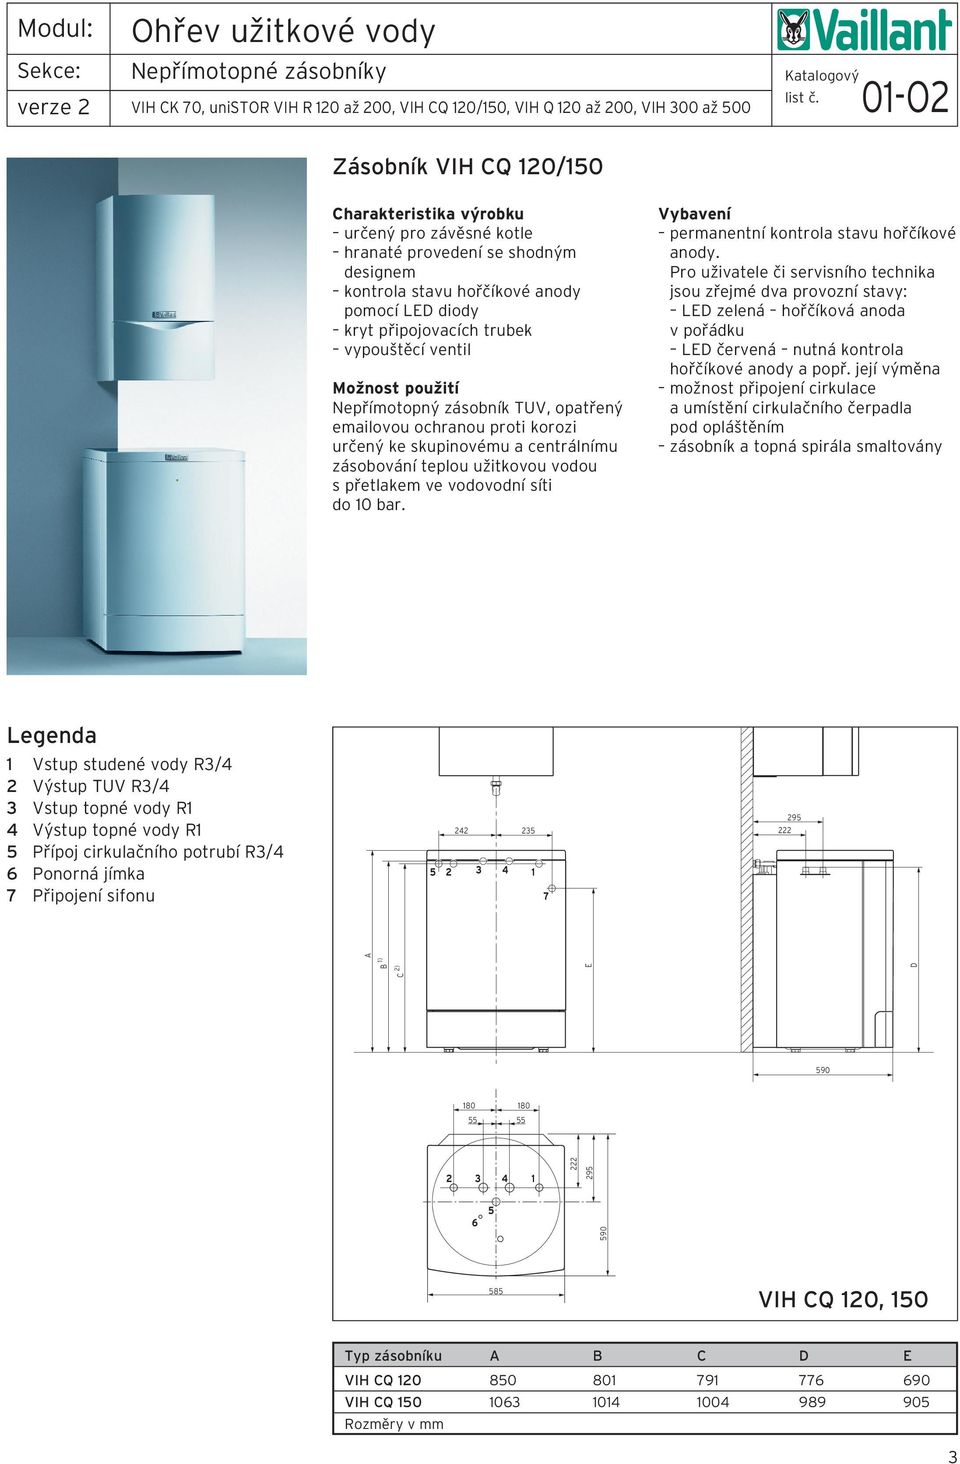 centrálnímu zásobování teplou užitkovou vodou s přetlakem ve vodovodní síti do 0 bar. Vybavení permanentní kontrola stavu hořčíkové anody.